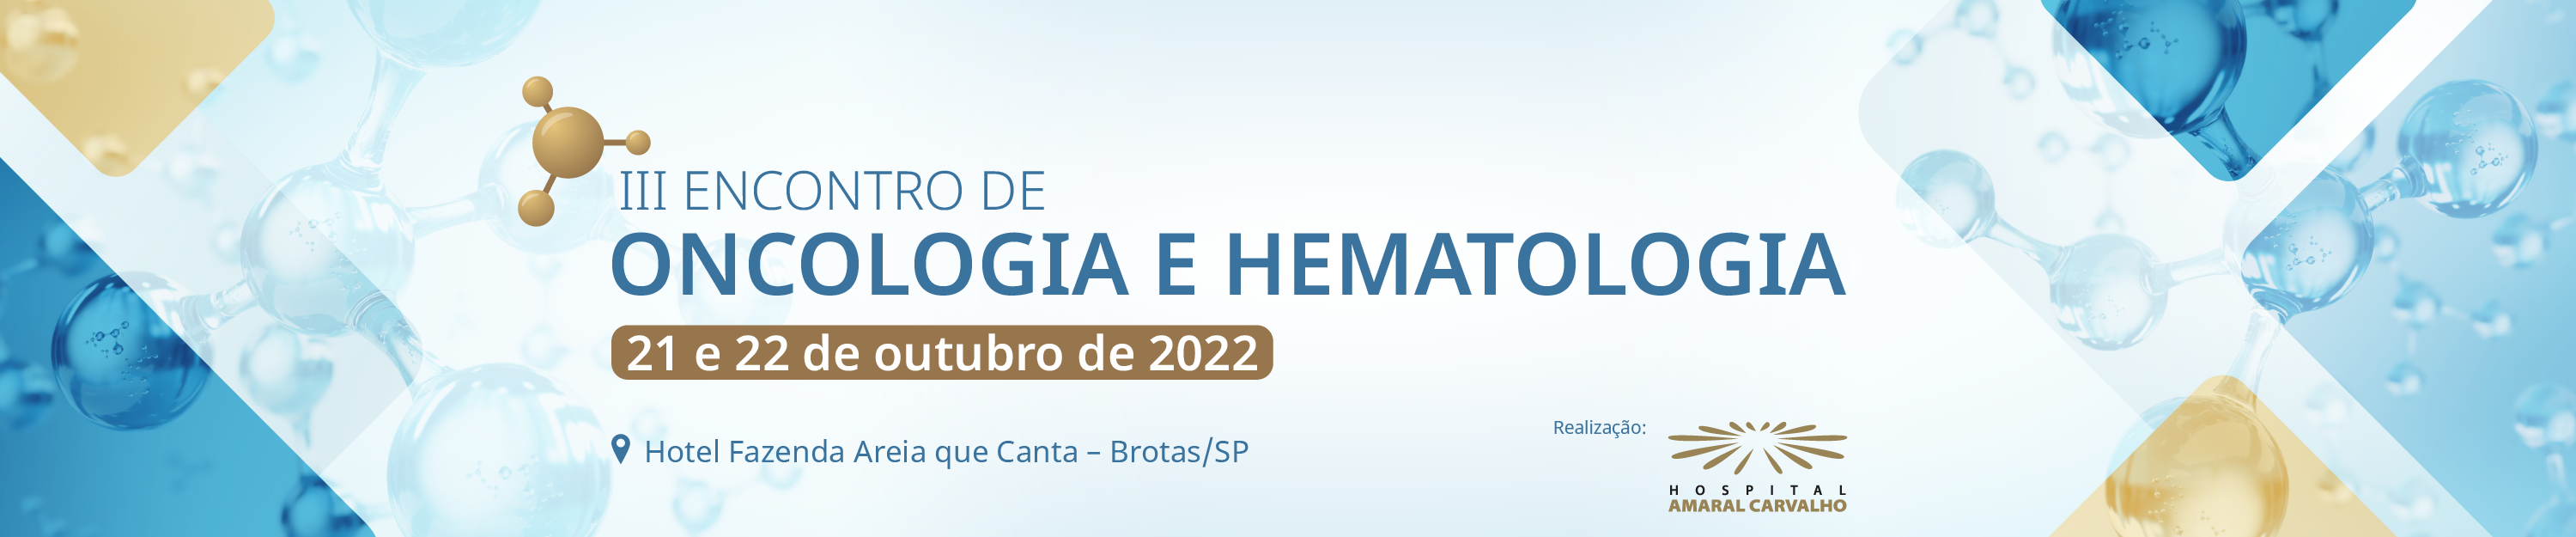 III Encontro de Oncologia e Hematologia - Hospital Amaral Carvalho